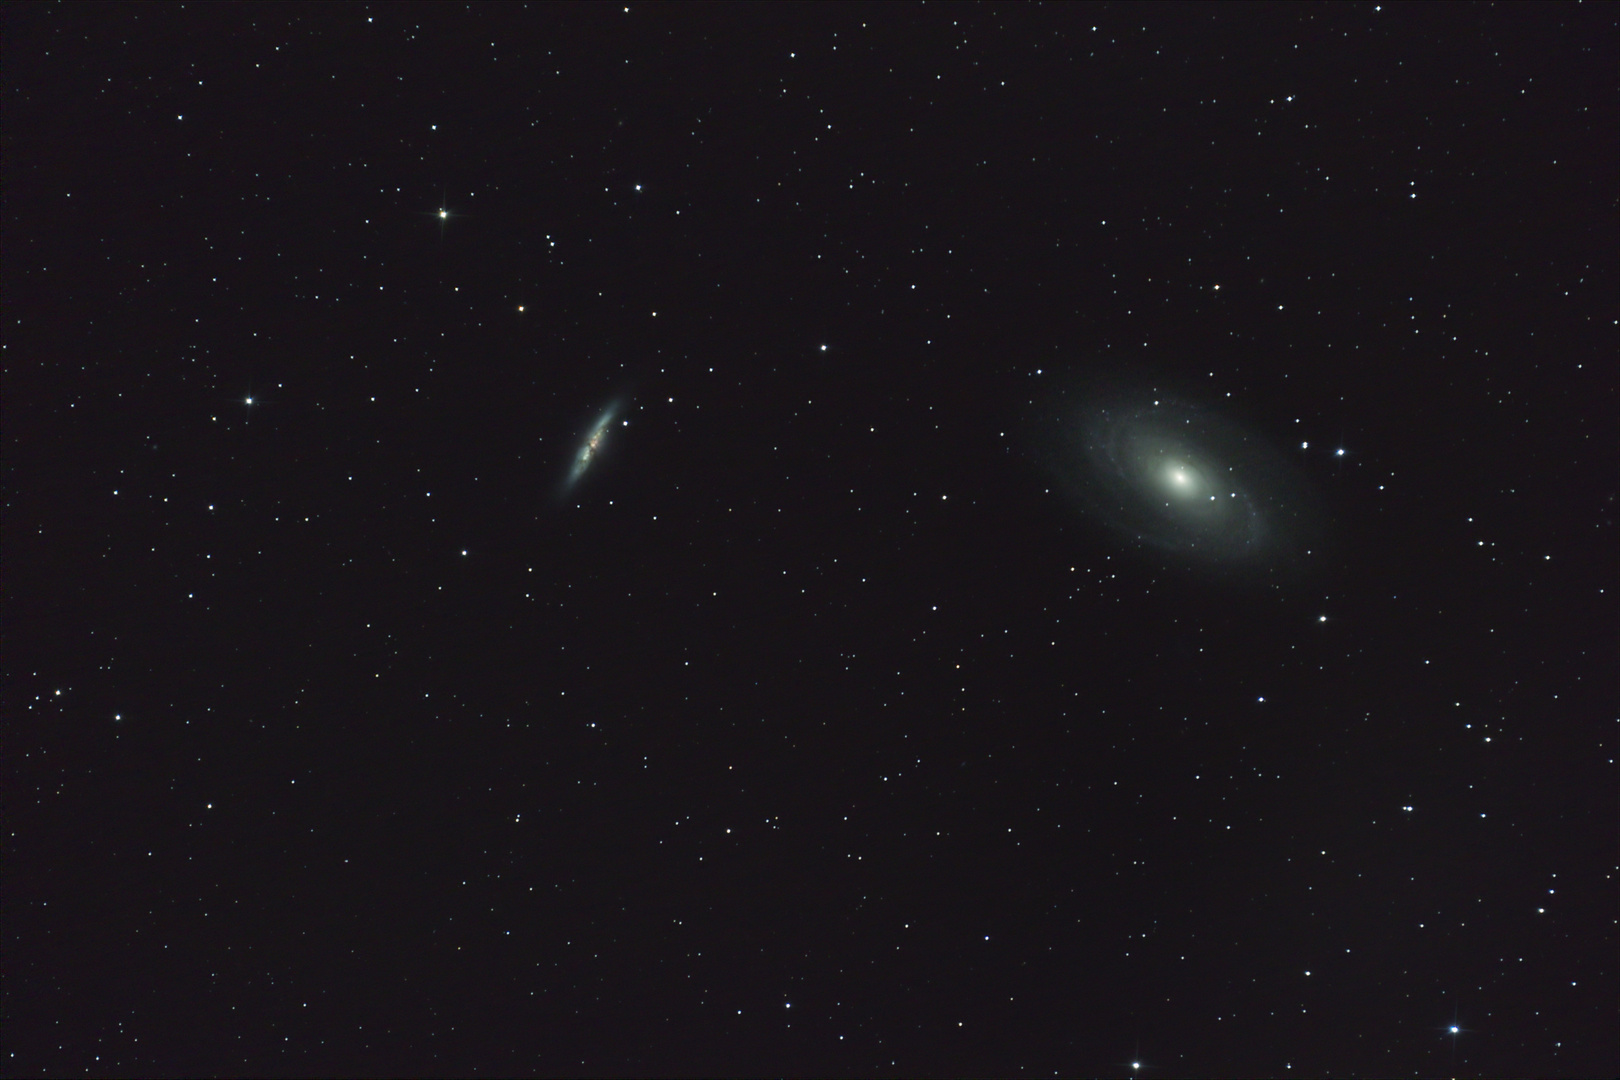 Bodes Galaxie und sein Nachbar M82